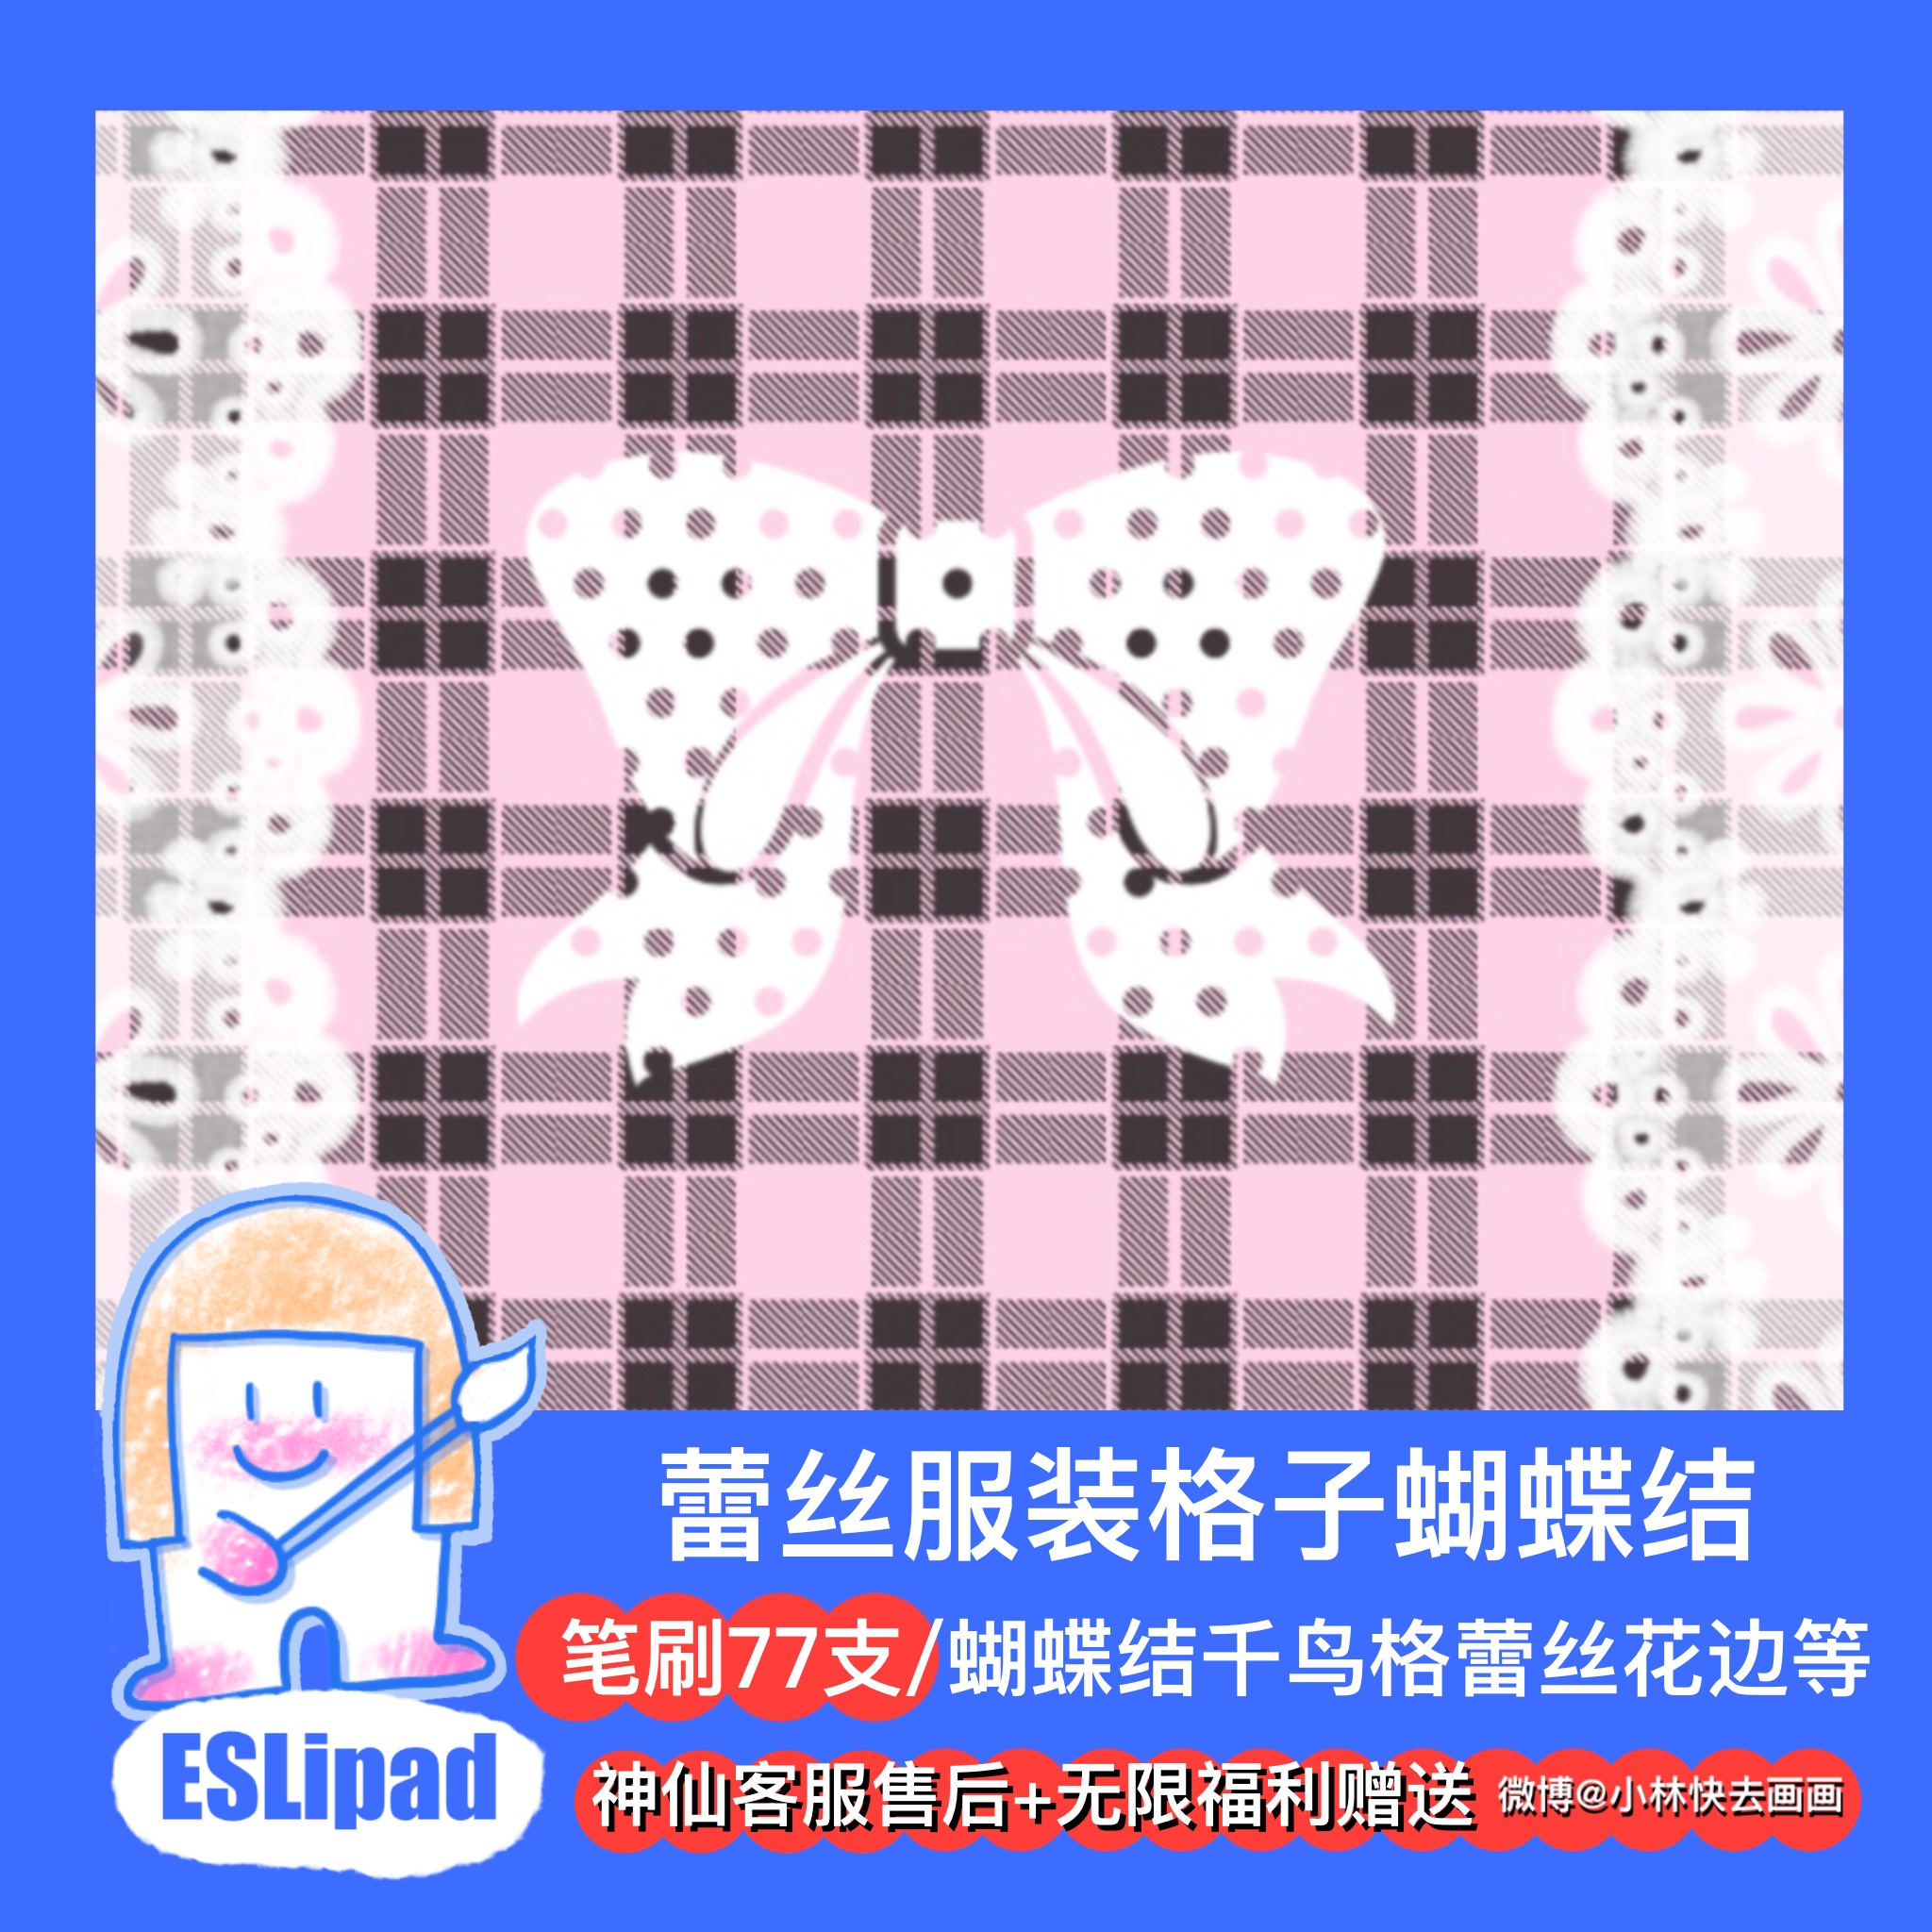 [procreate brush] clothing lace JK grid brush 70 iPads painting eslipad bow